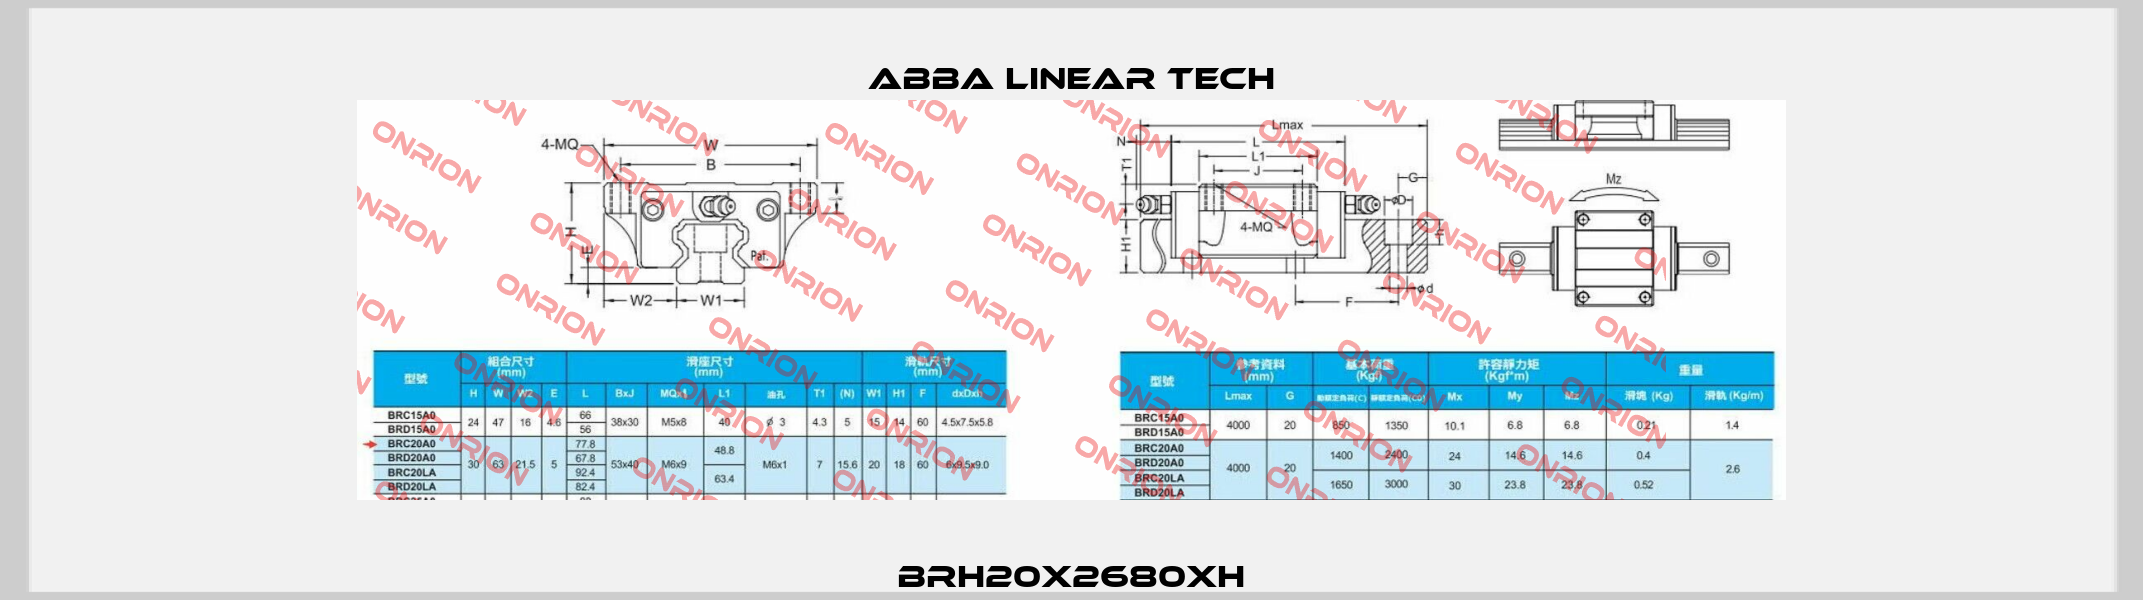 BRH20x2680xH ABBA Linear Tech